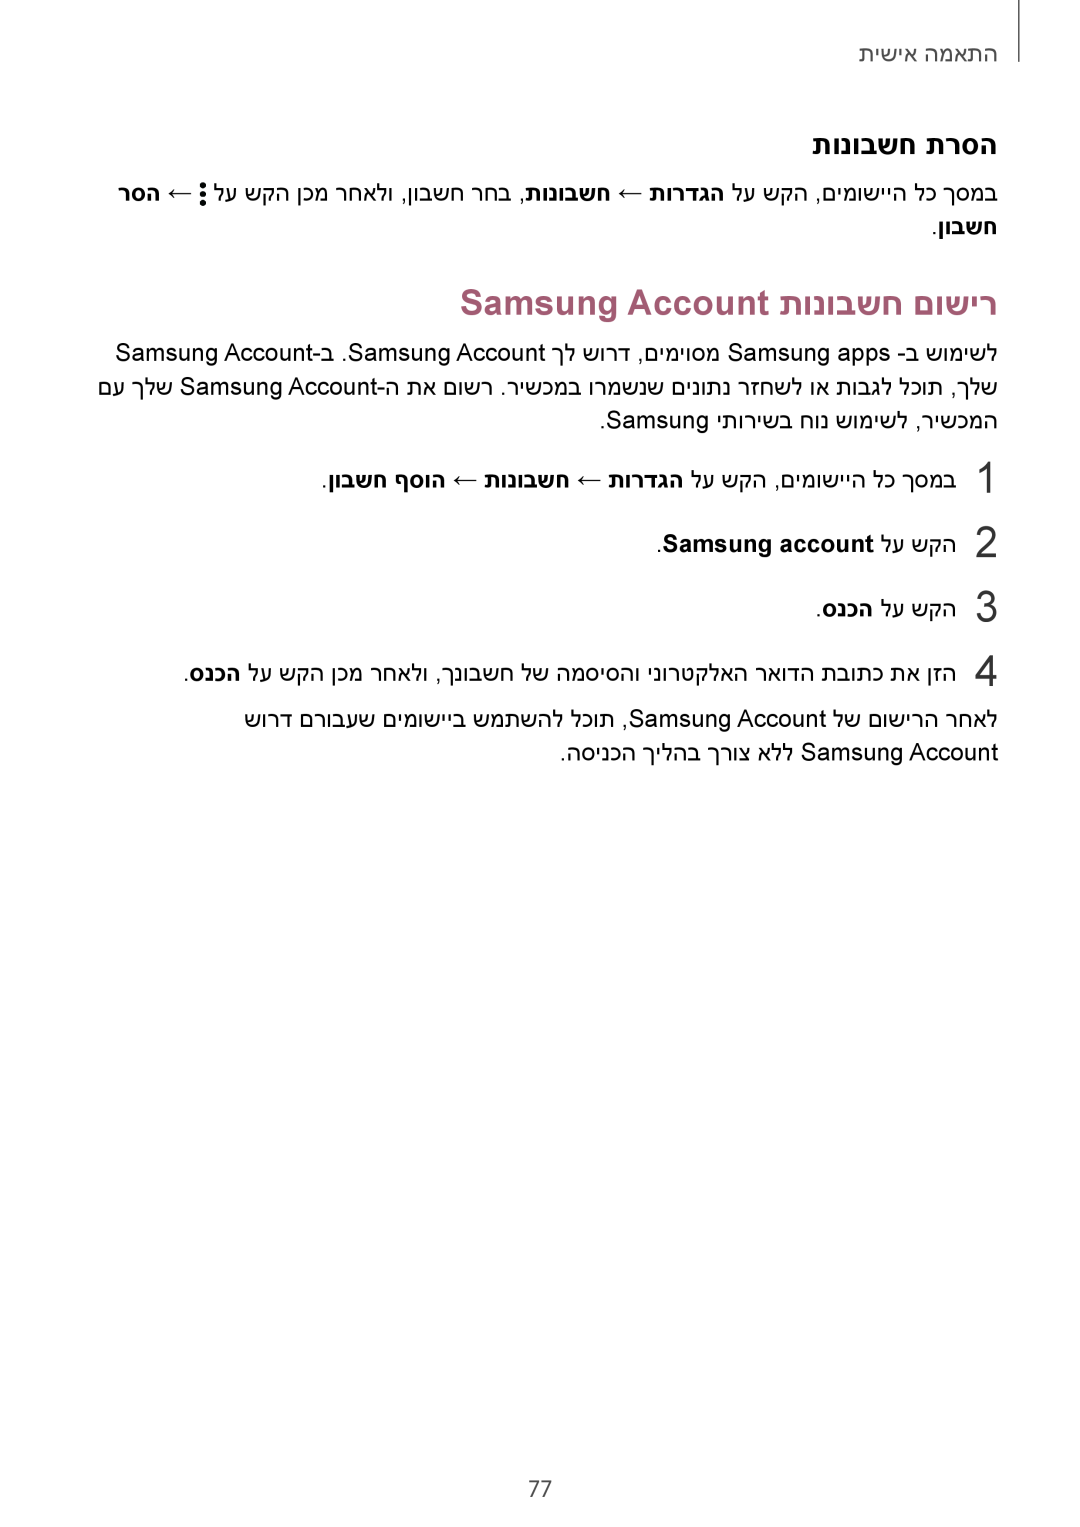 Samsung SM-N910FZKECRO manual Samsung Account תונובשח םושיר, תונובשח תרסה, ןובשח, Samsung account לע שקה2, התאמה אישית 